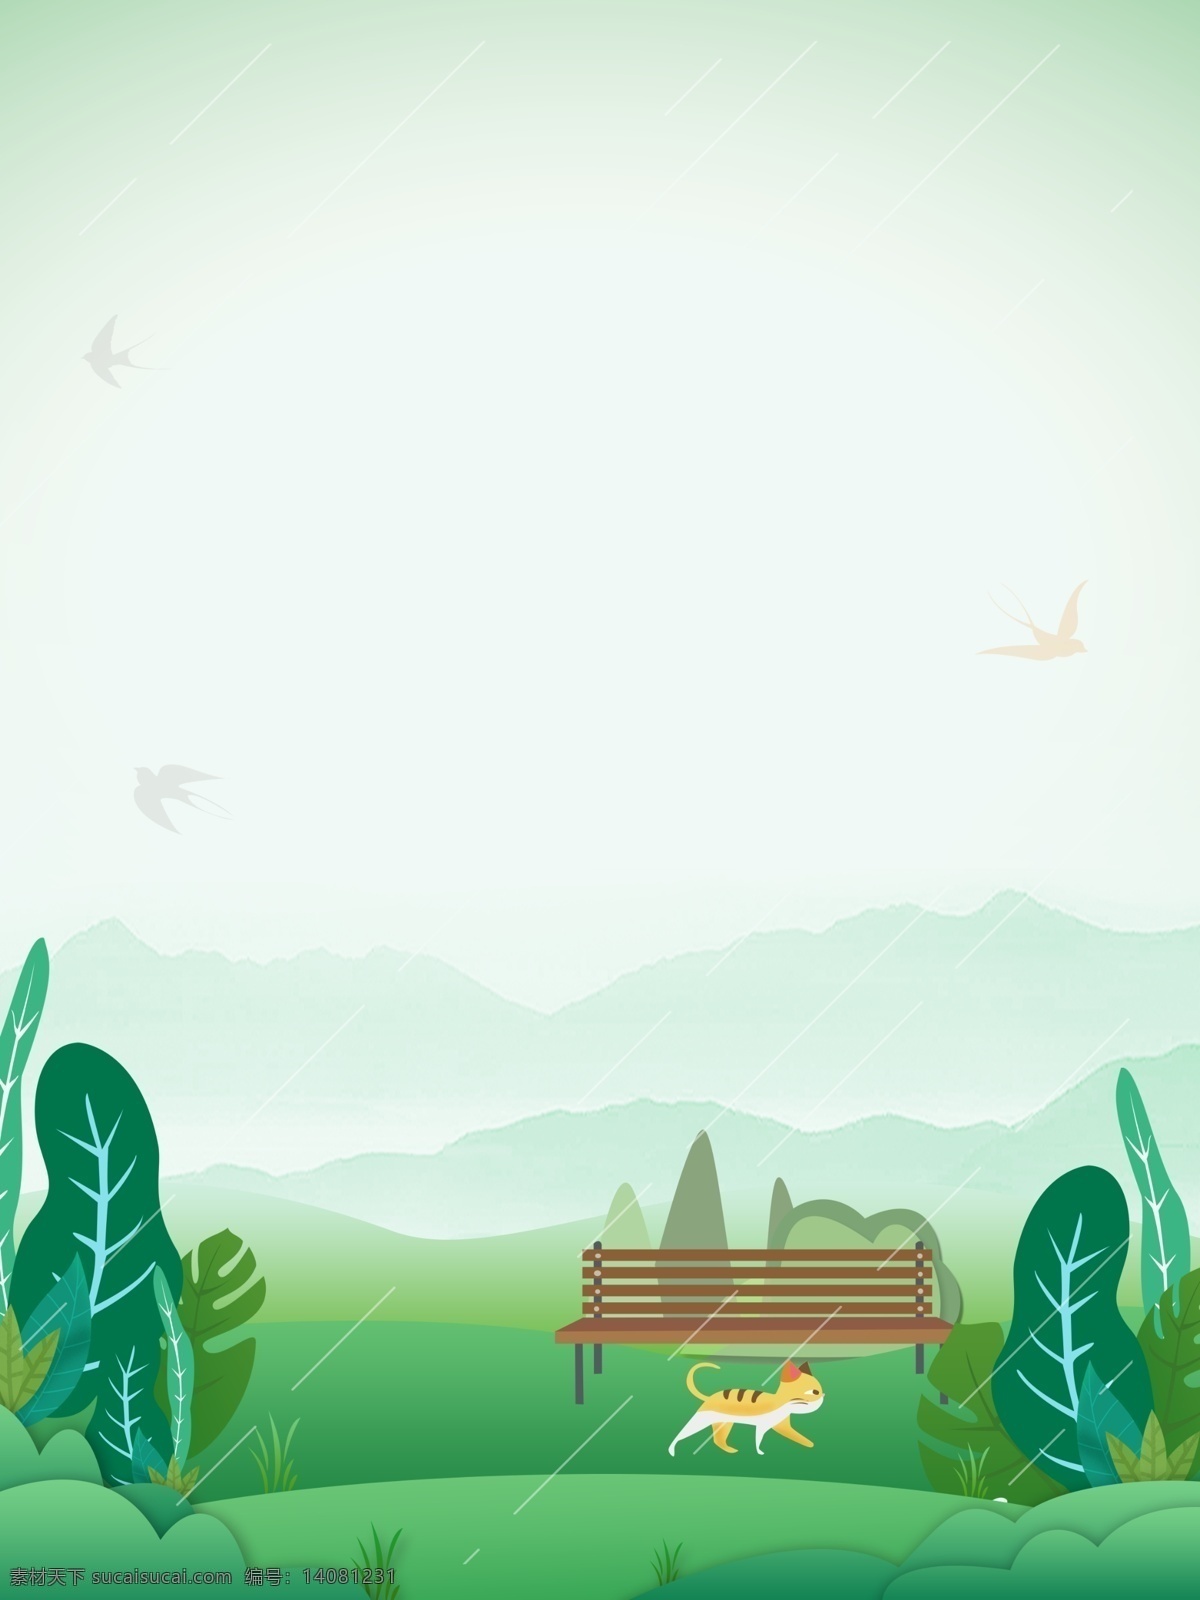 清新 简约 公园 风景 广告 背景 广告背景 植物 草丛 花园 长椅 猫咪 可爱